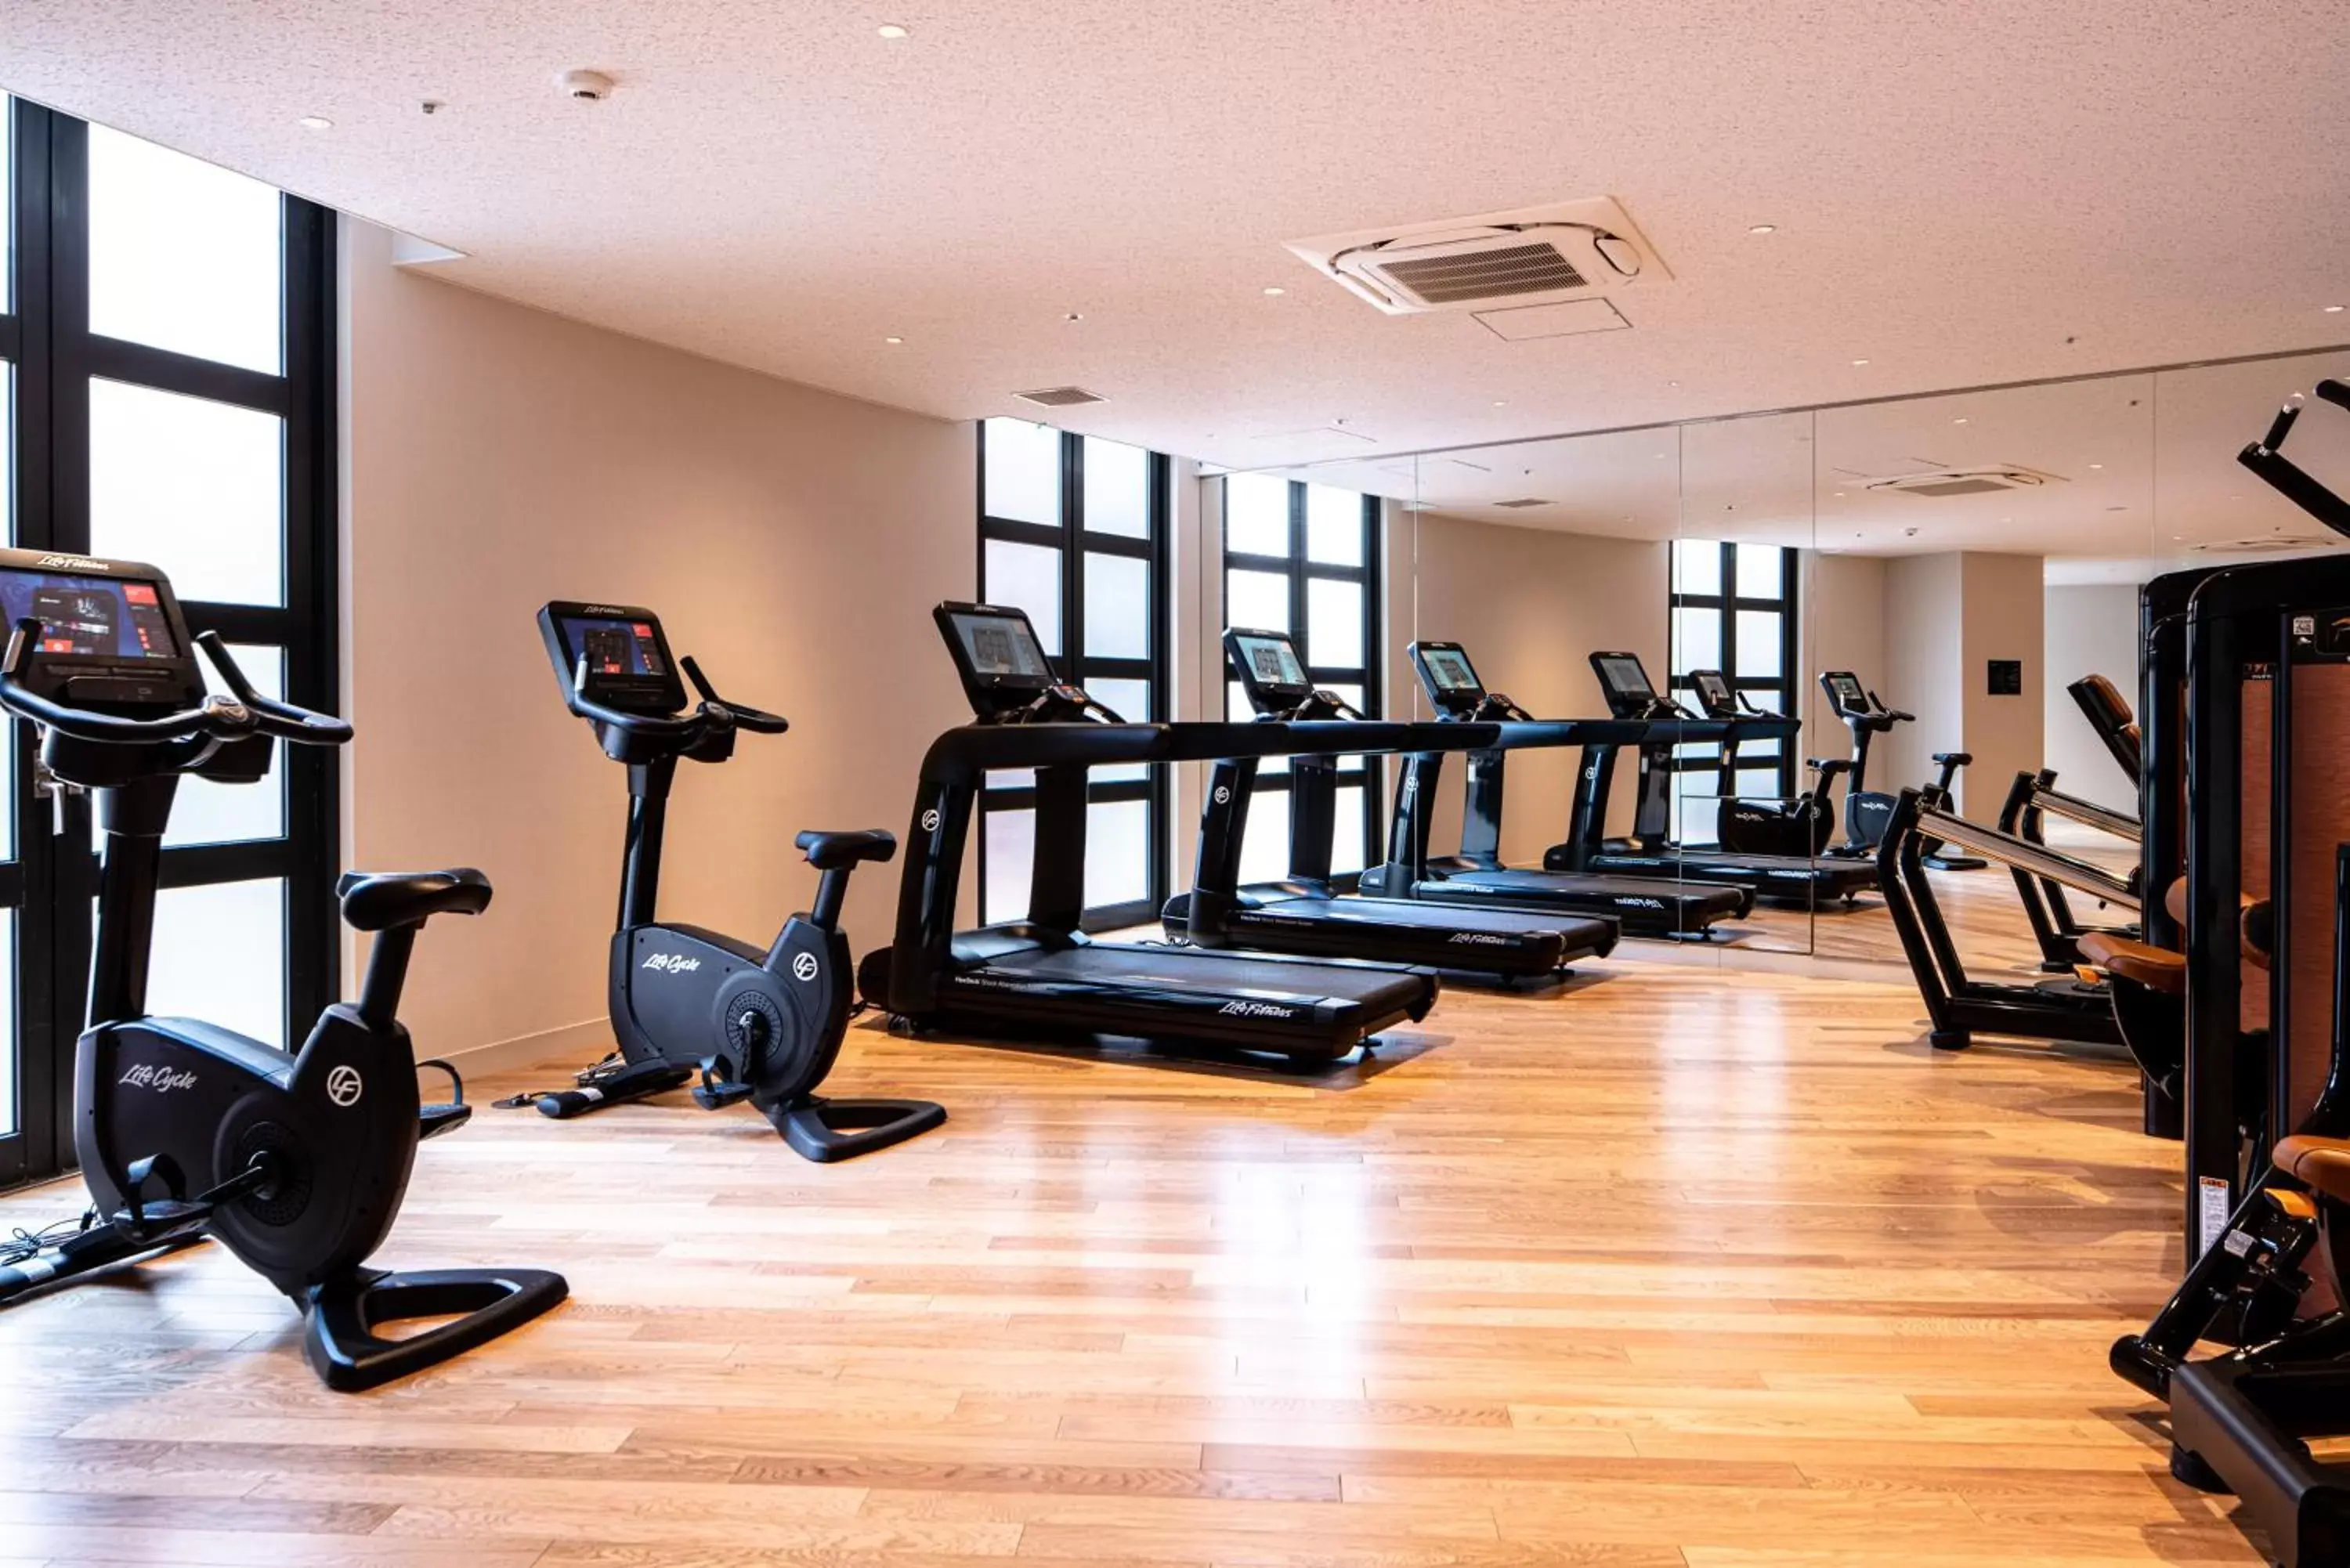 Fitness centre/facilities, Fitness Center/Facilities in THE BASICS FUKUOKA